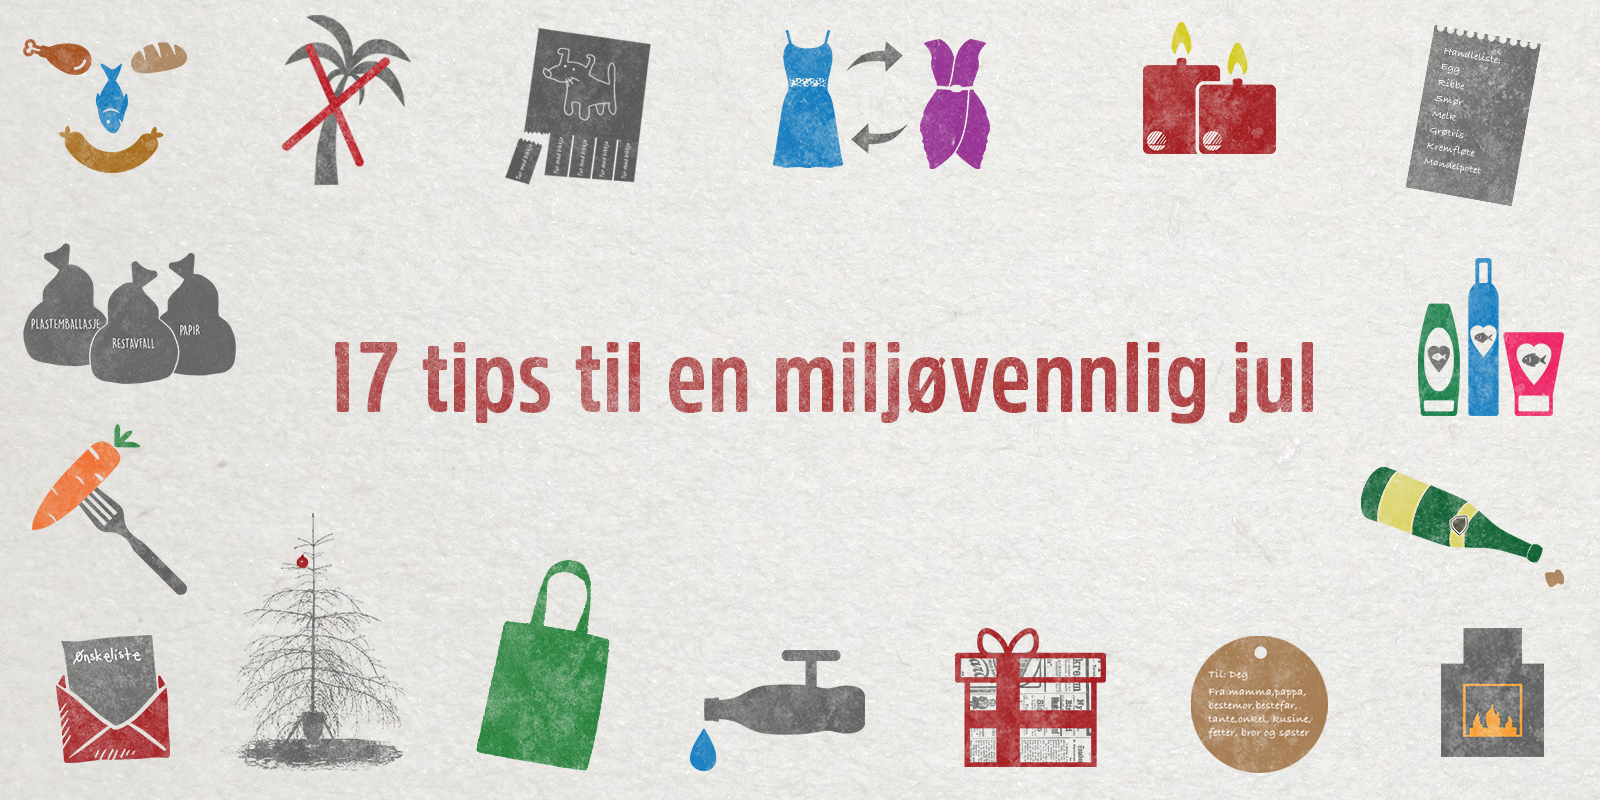 17 tips til en miljøvennlig jul!